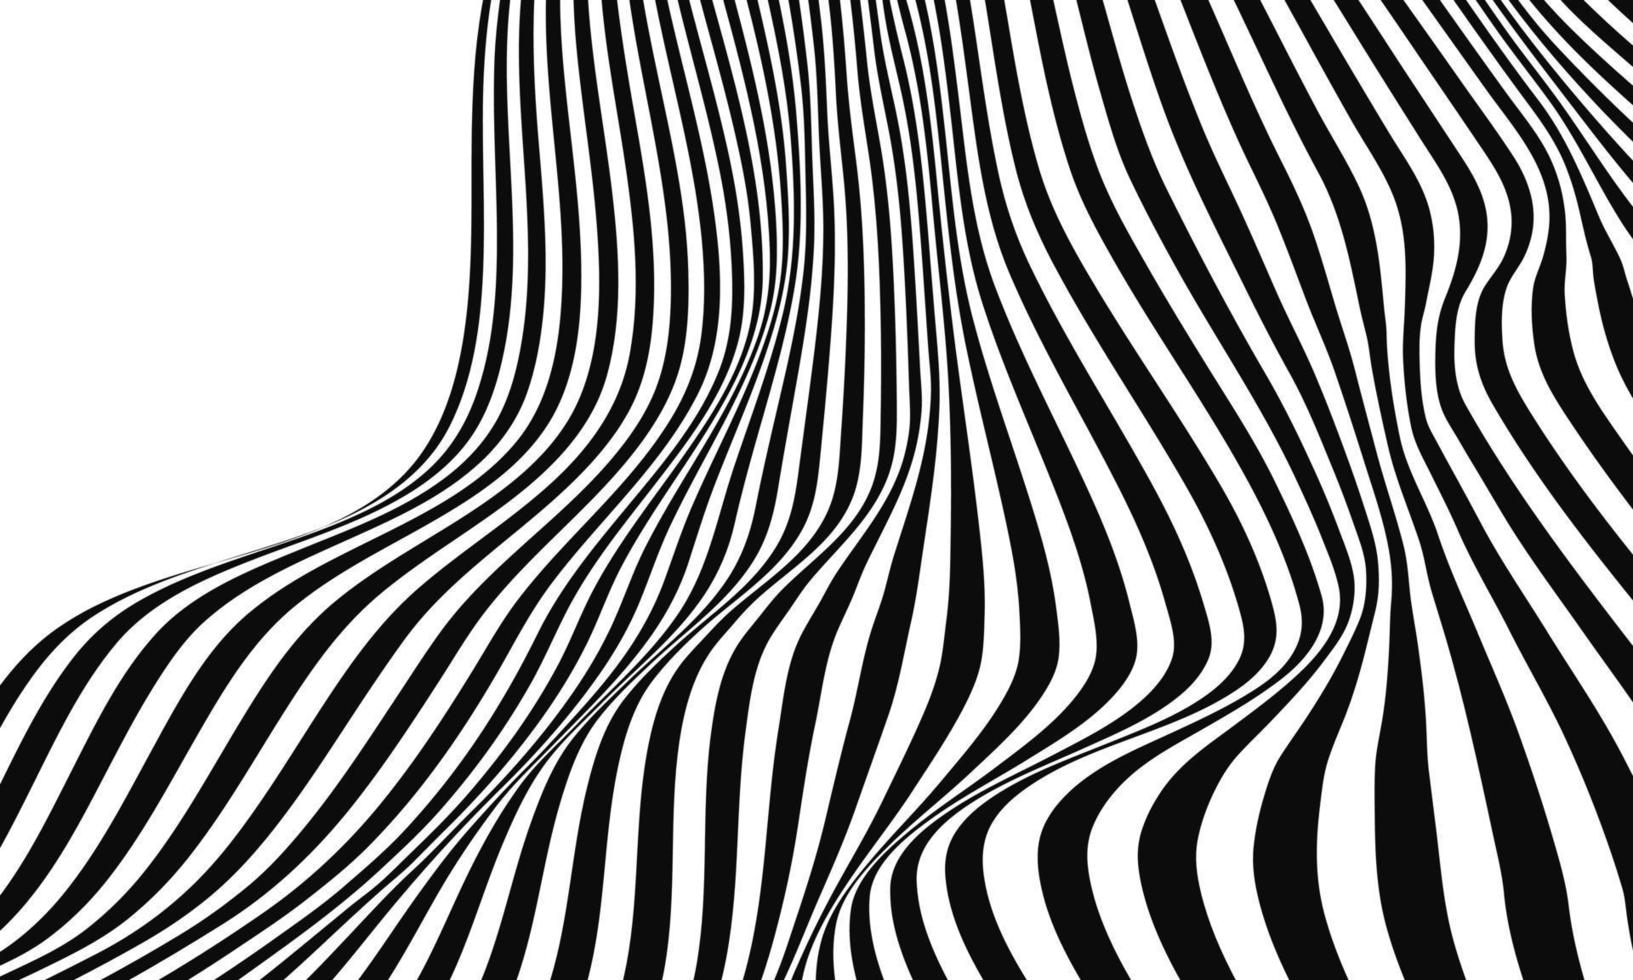  Schwarze Hintergrundbild 1633x980. abstrakte schwarze weiße farbe design muster optische täuschung poster hintergrundbild backgound 5059258 Vektor Kunst bei Vecteezy